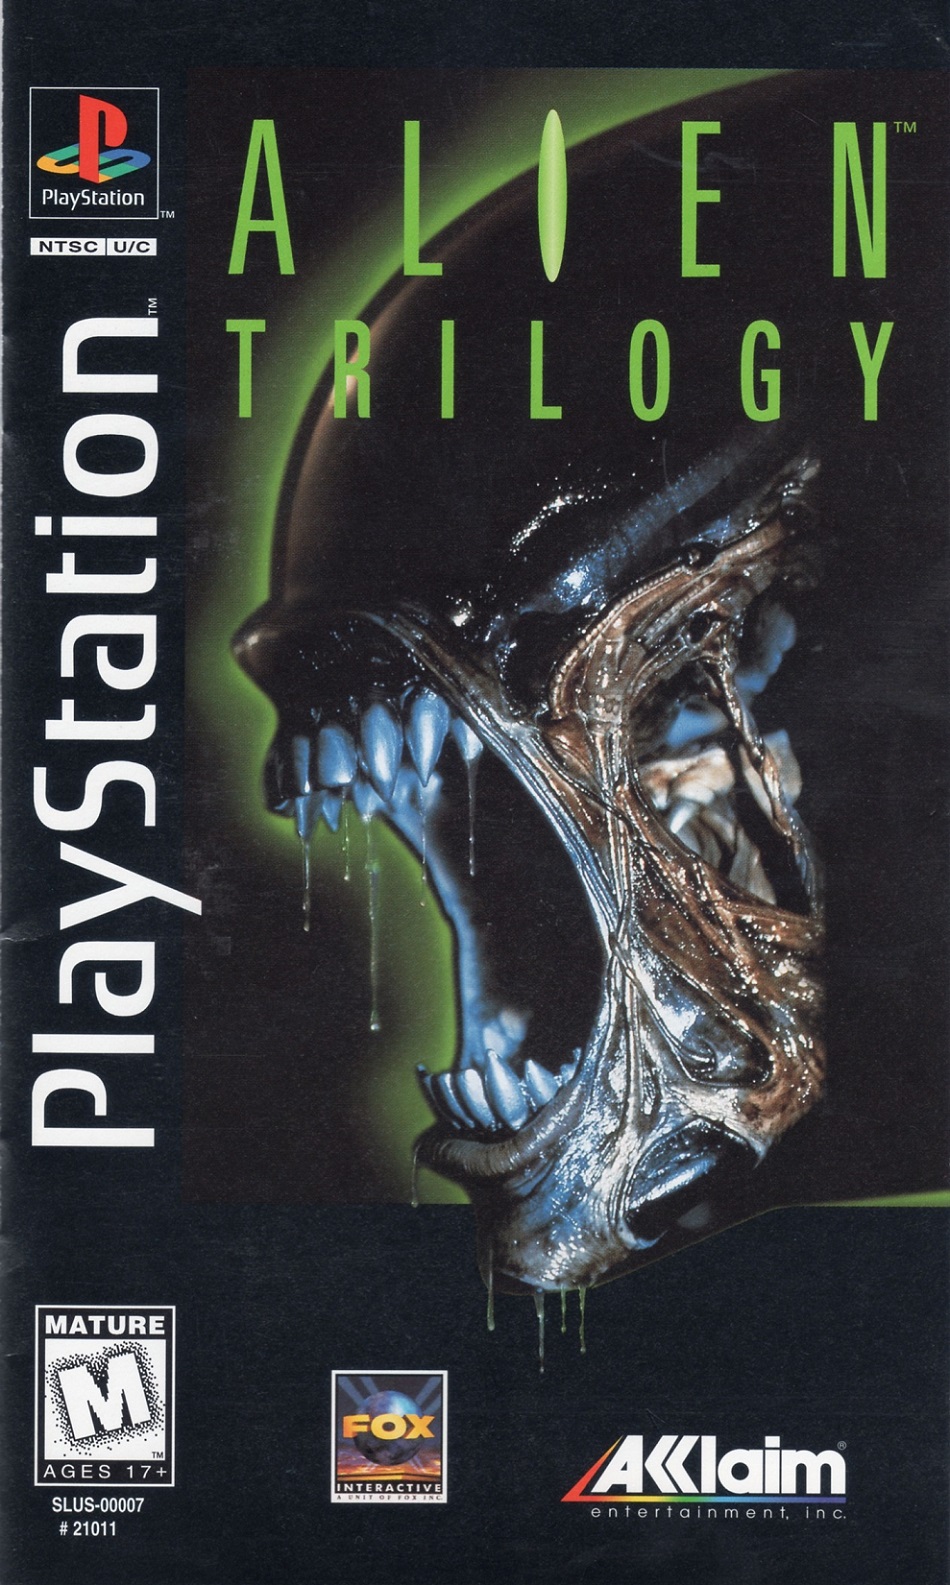 download alien trilogy psx